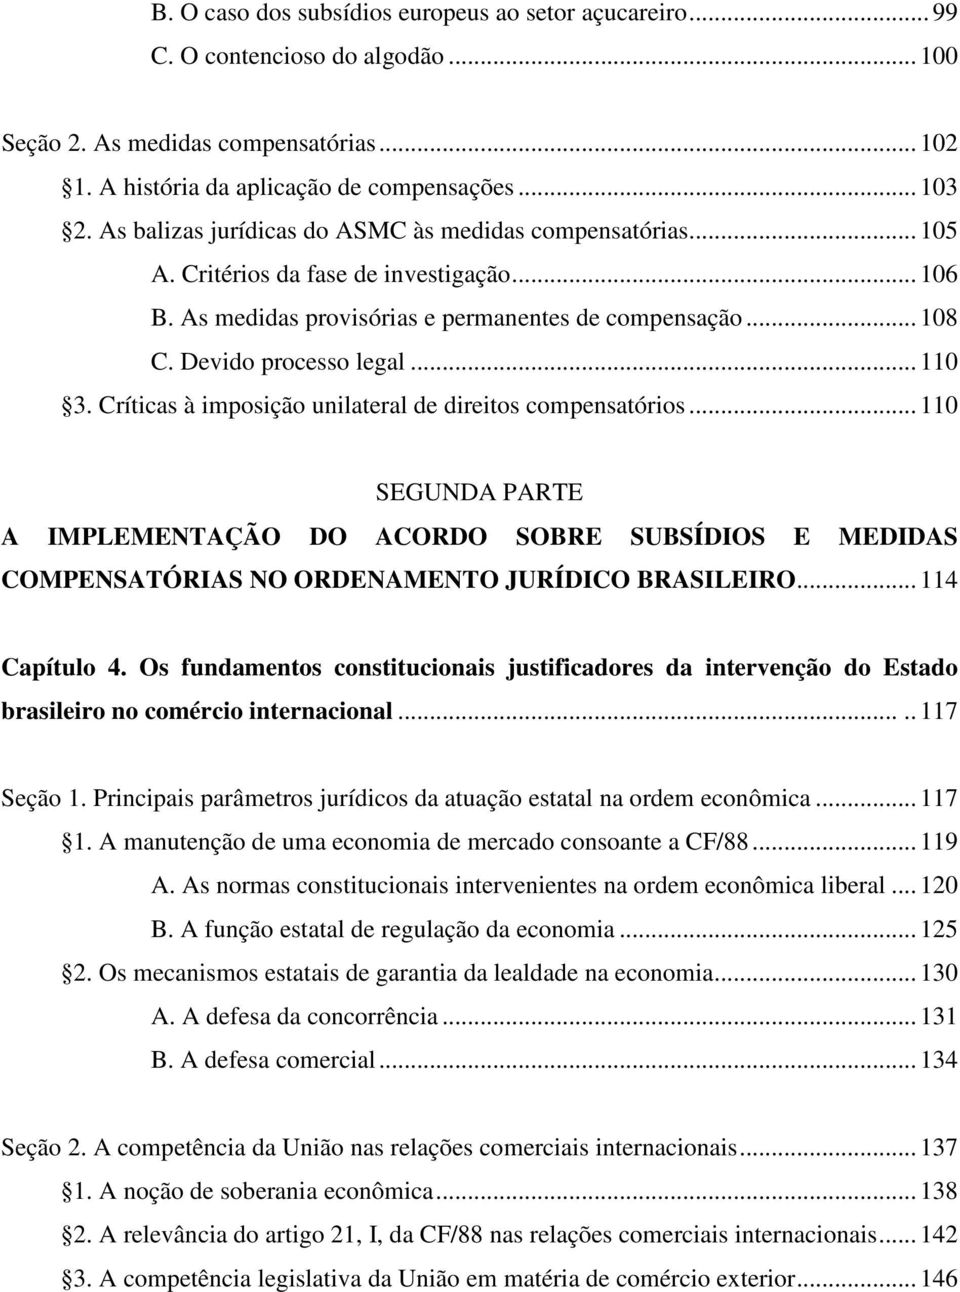 Críticas à imposição unilateral de direitos compensatórios... 110 SEGUNDA PARTE A IMPLEMENTAÇÃO DO ACORDO SOBRE SUBSÍDIOS E MEDIDAS COMPENSATÓRIAS NO ORDENAMENTO JURÍDICO BRASILEIRO... 114 Capítulo 4.